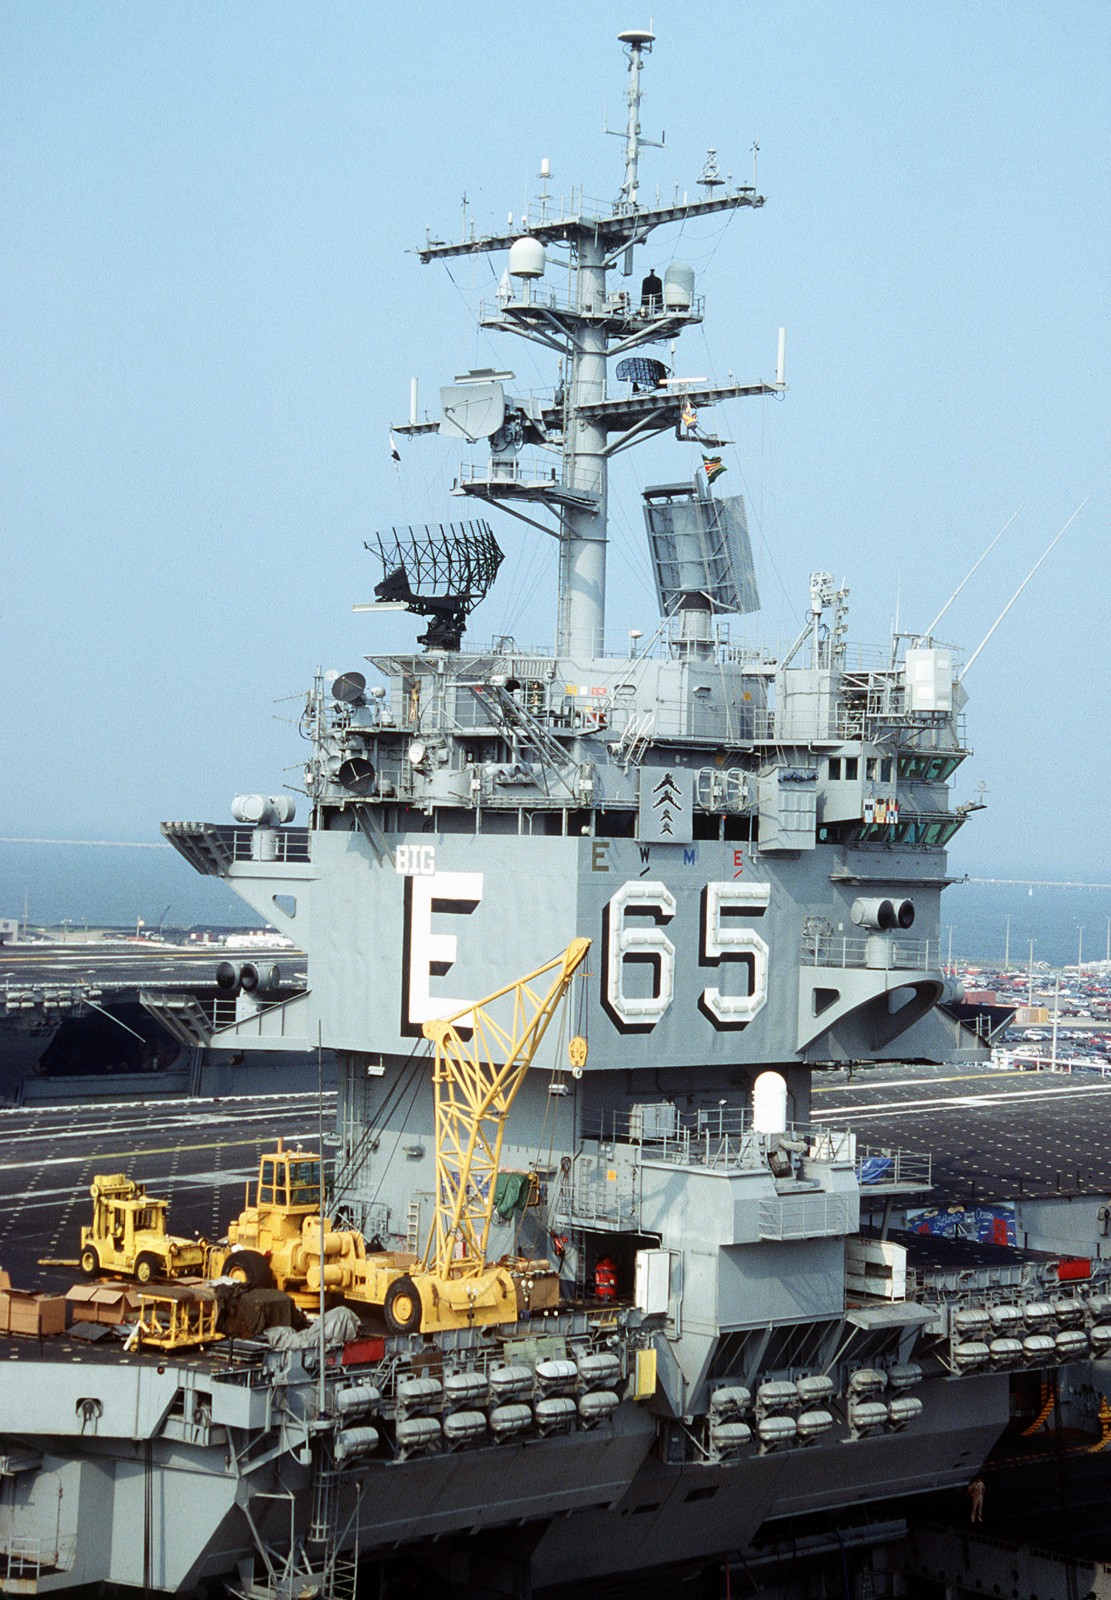 cvn-65 uss enterprise aircraft carrier us navy 98